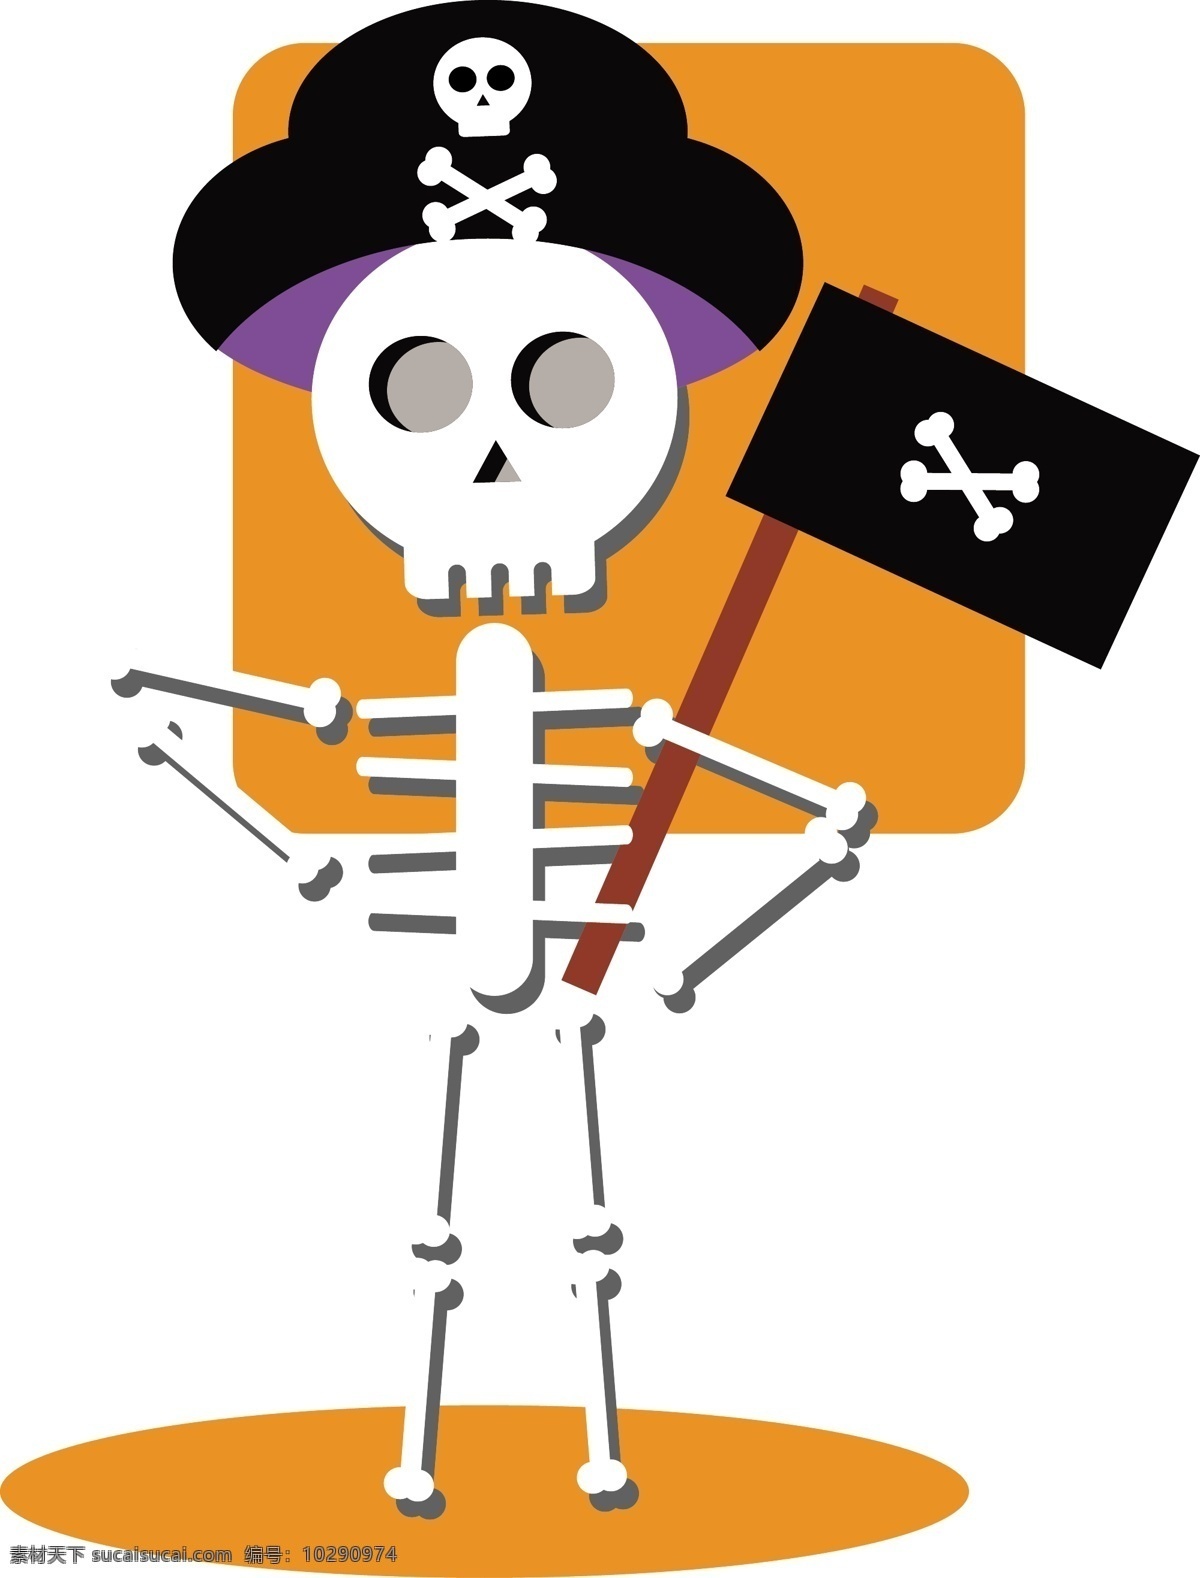 万圣节 骷髅 元素 设计元素 卡通 可爱 海盗